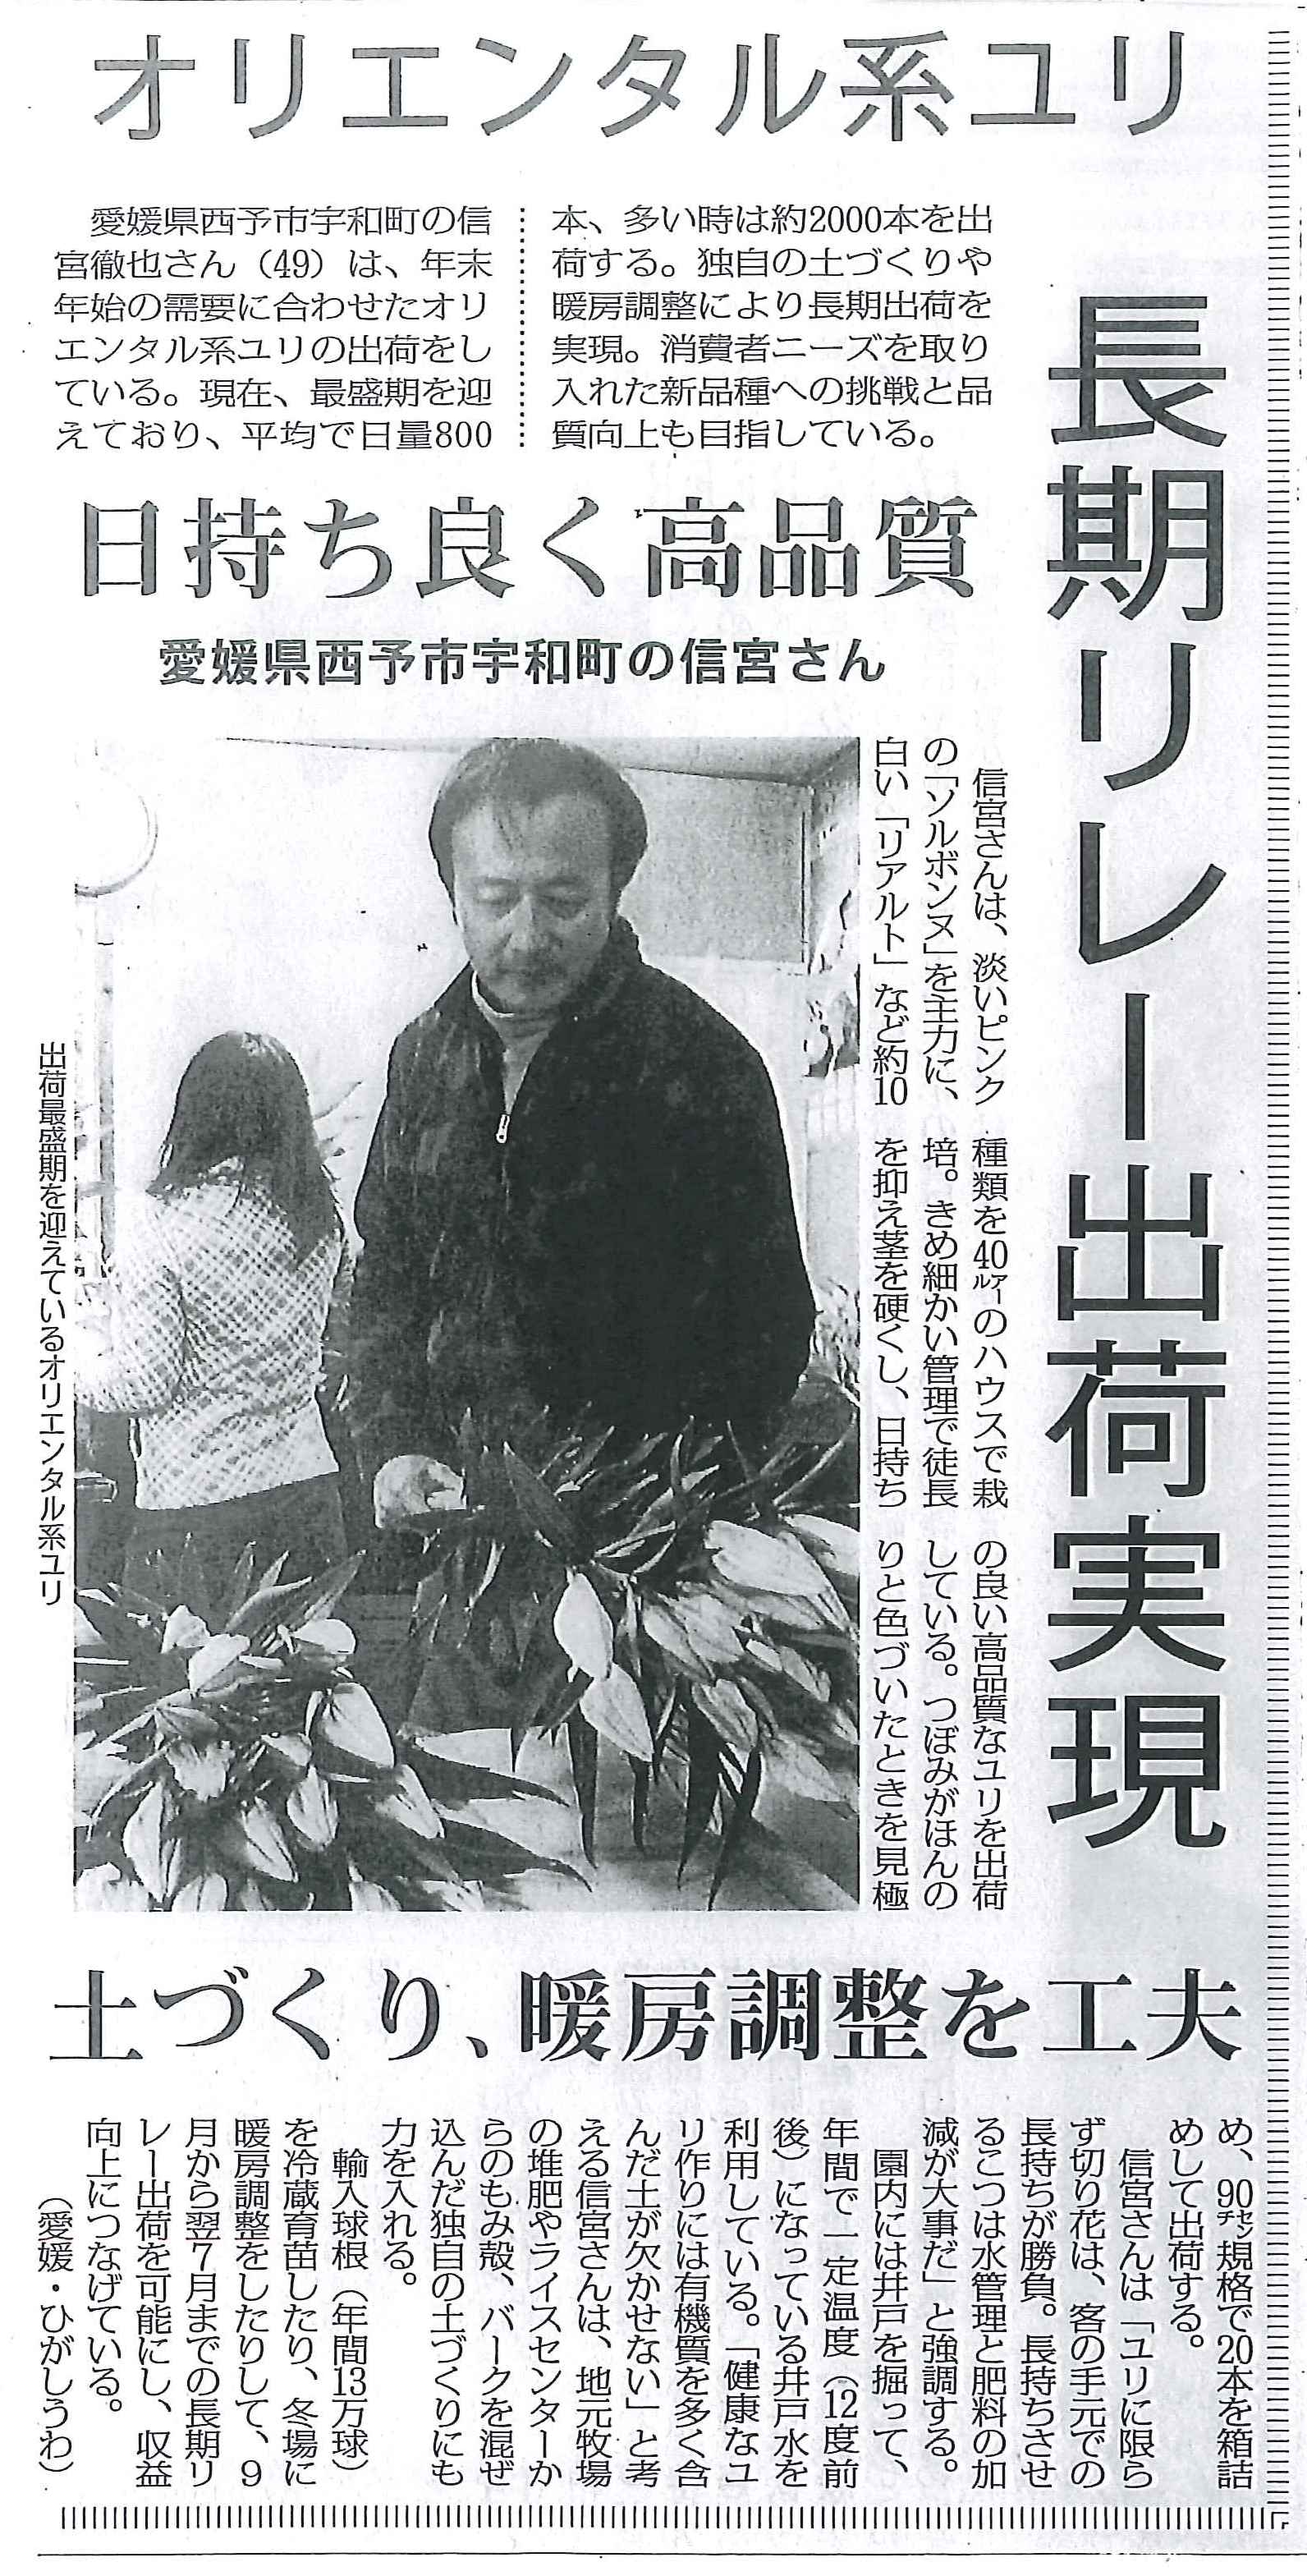 愛媛県の信宮さんの記事が日本農業新聞に掲載されました（2013/12/23）